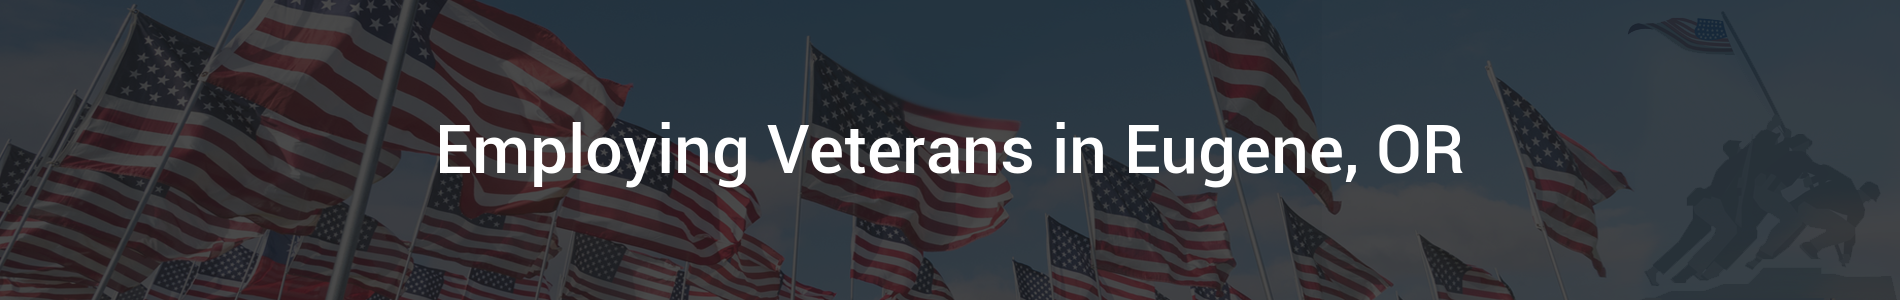 Employing Veterans - Internal Banner